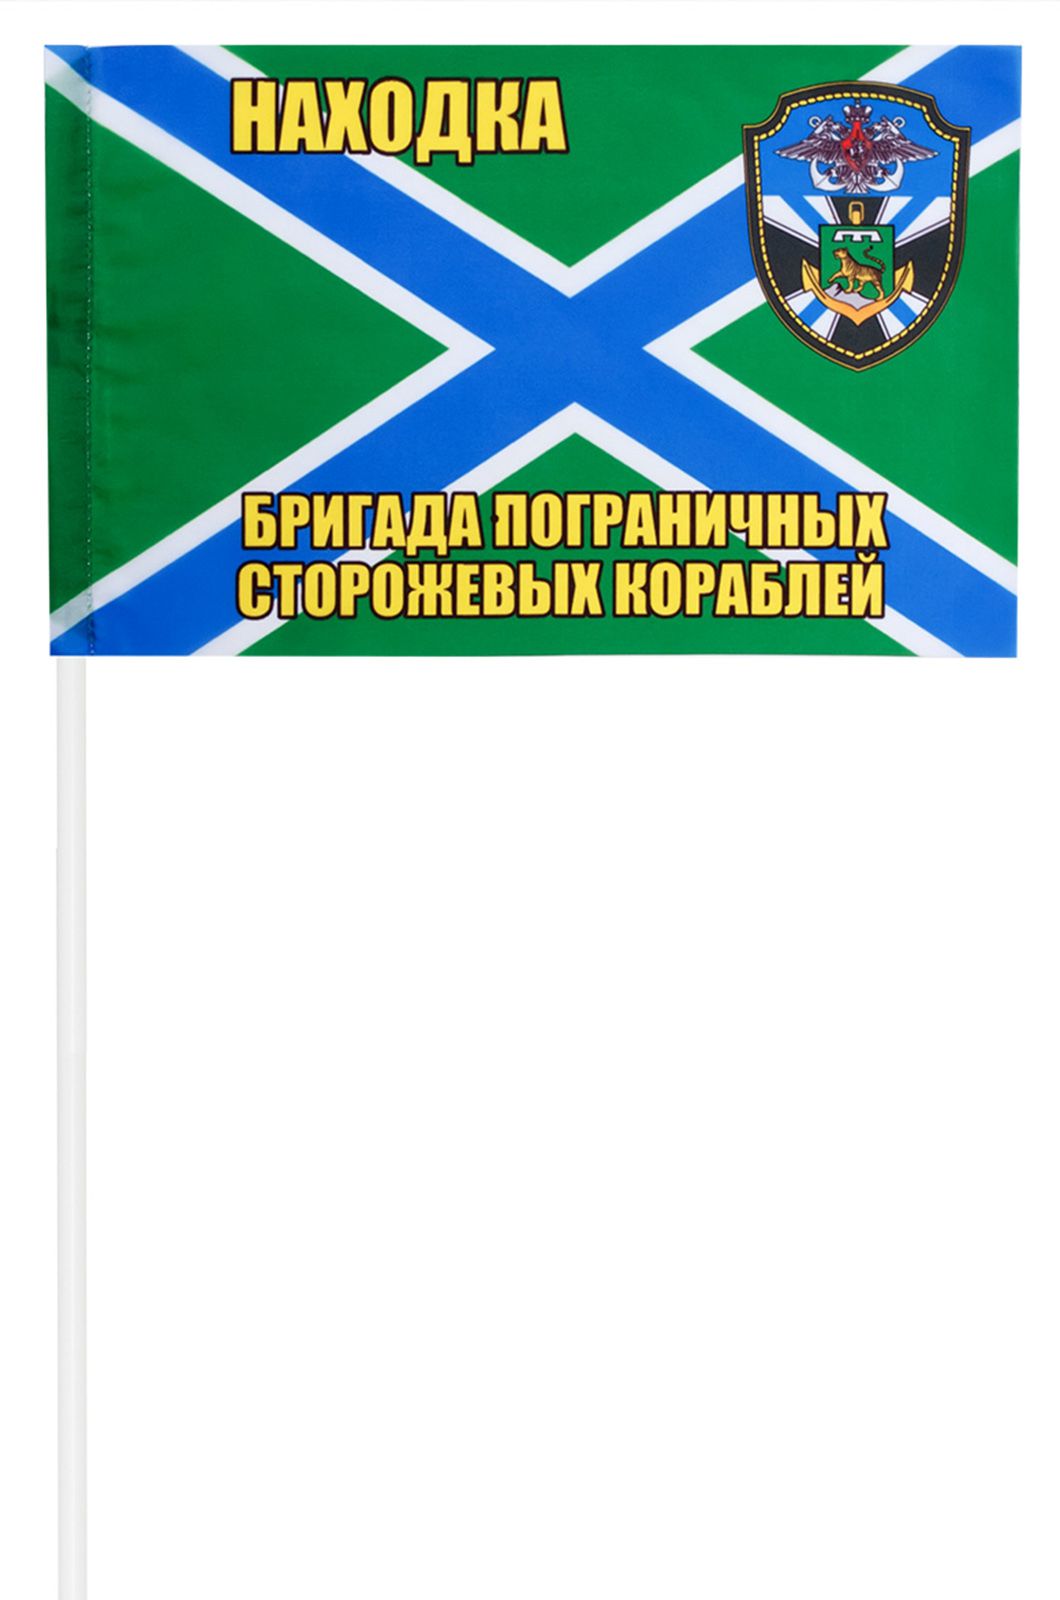 Флажок "Находкинская бригада пограничных сторожевых кораблей"